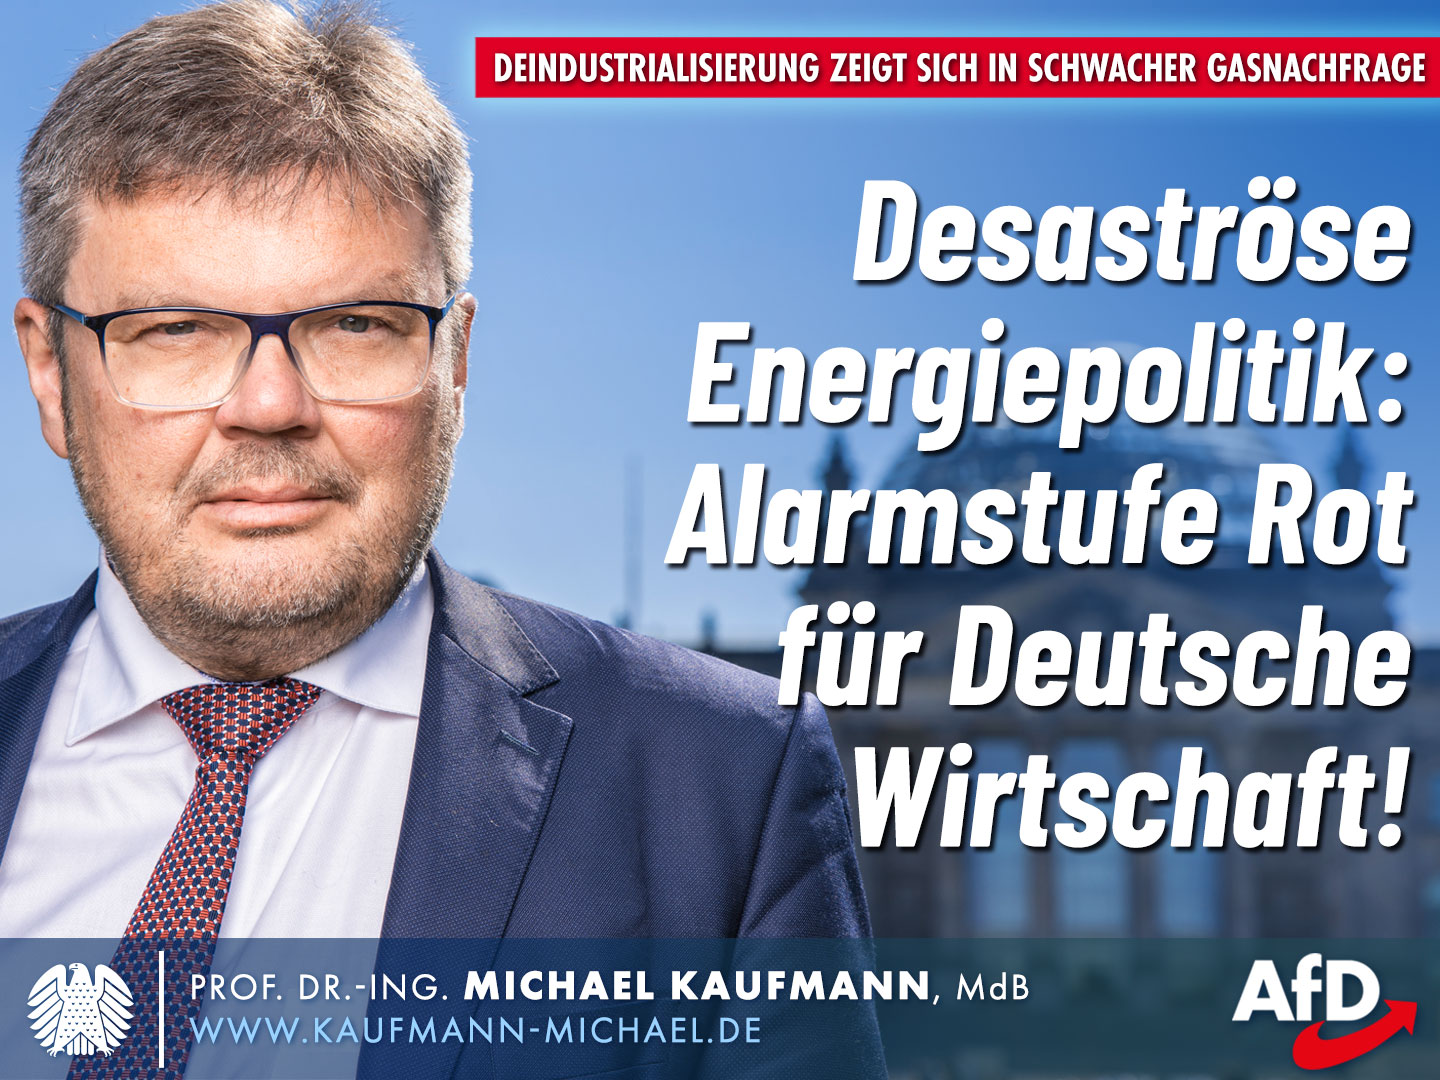 Desaströse Energiepolitik: Alarmstufe Rot für Deutsche Wirtschaft!